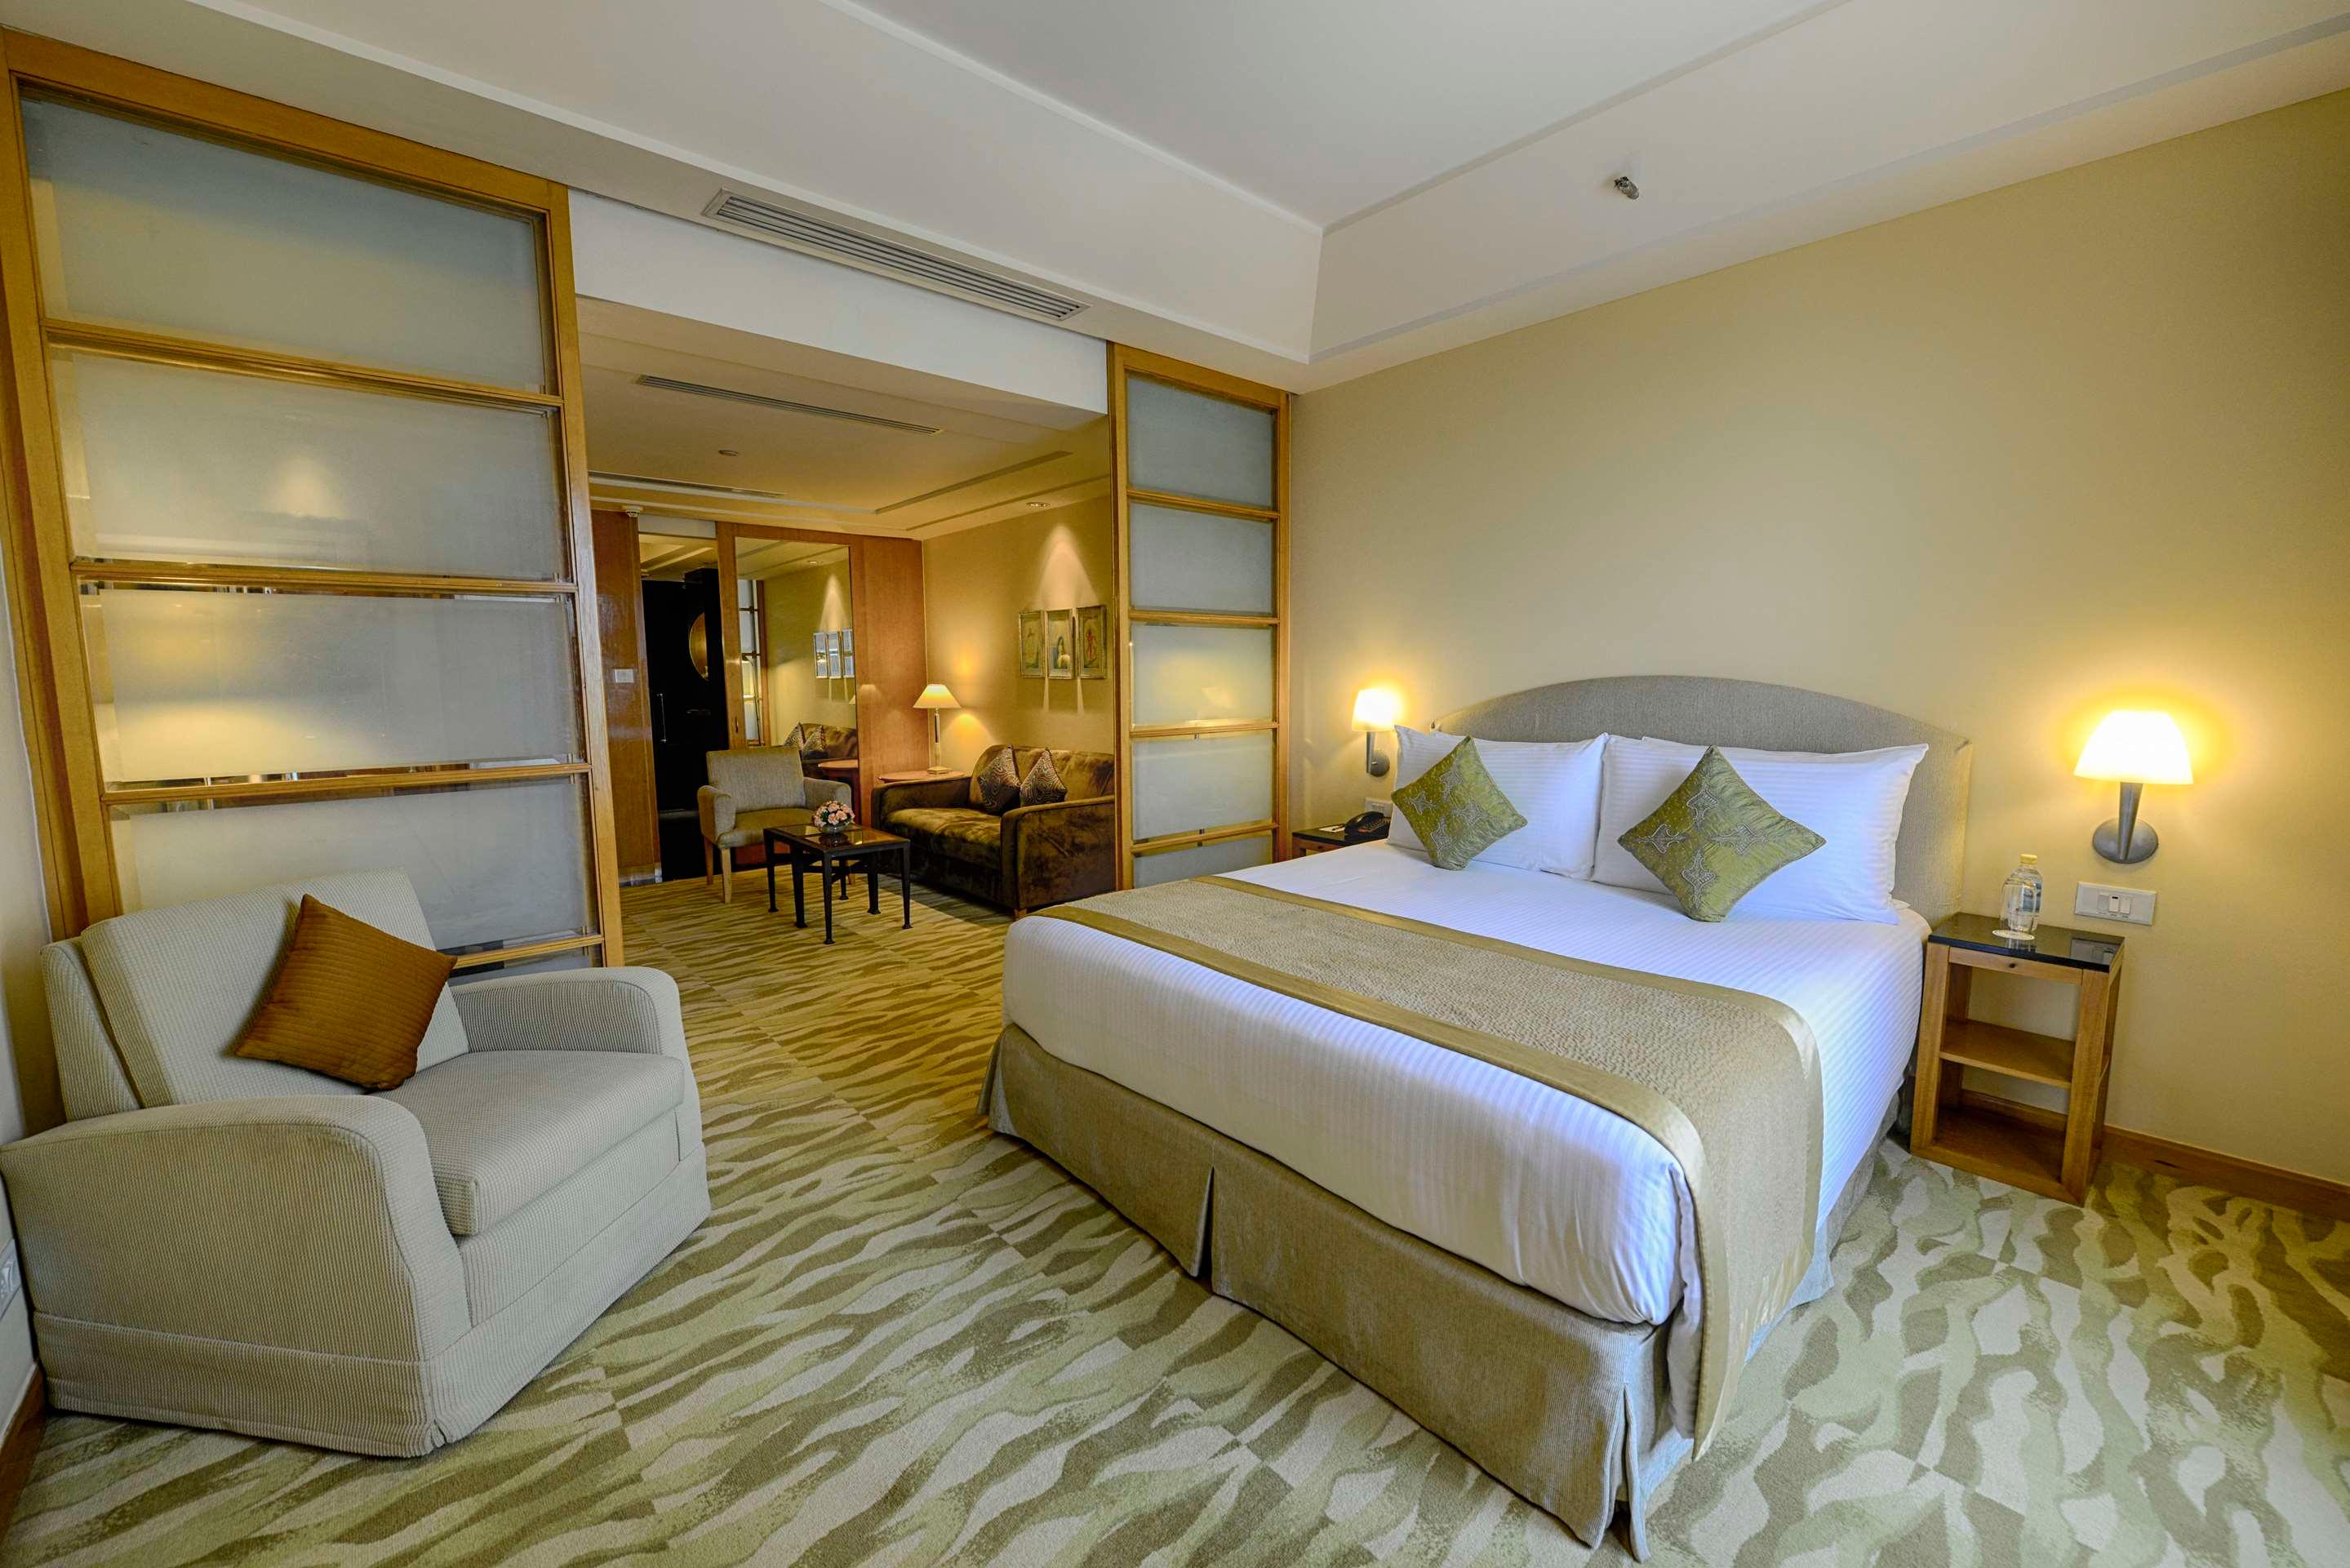 Rooms of Hotel Ramhan Palace Mahipalpur - Goibibo